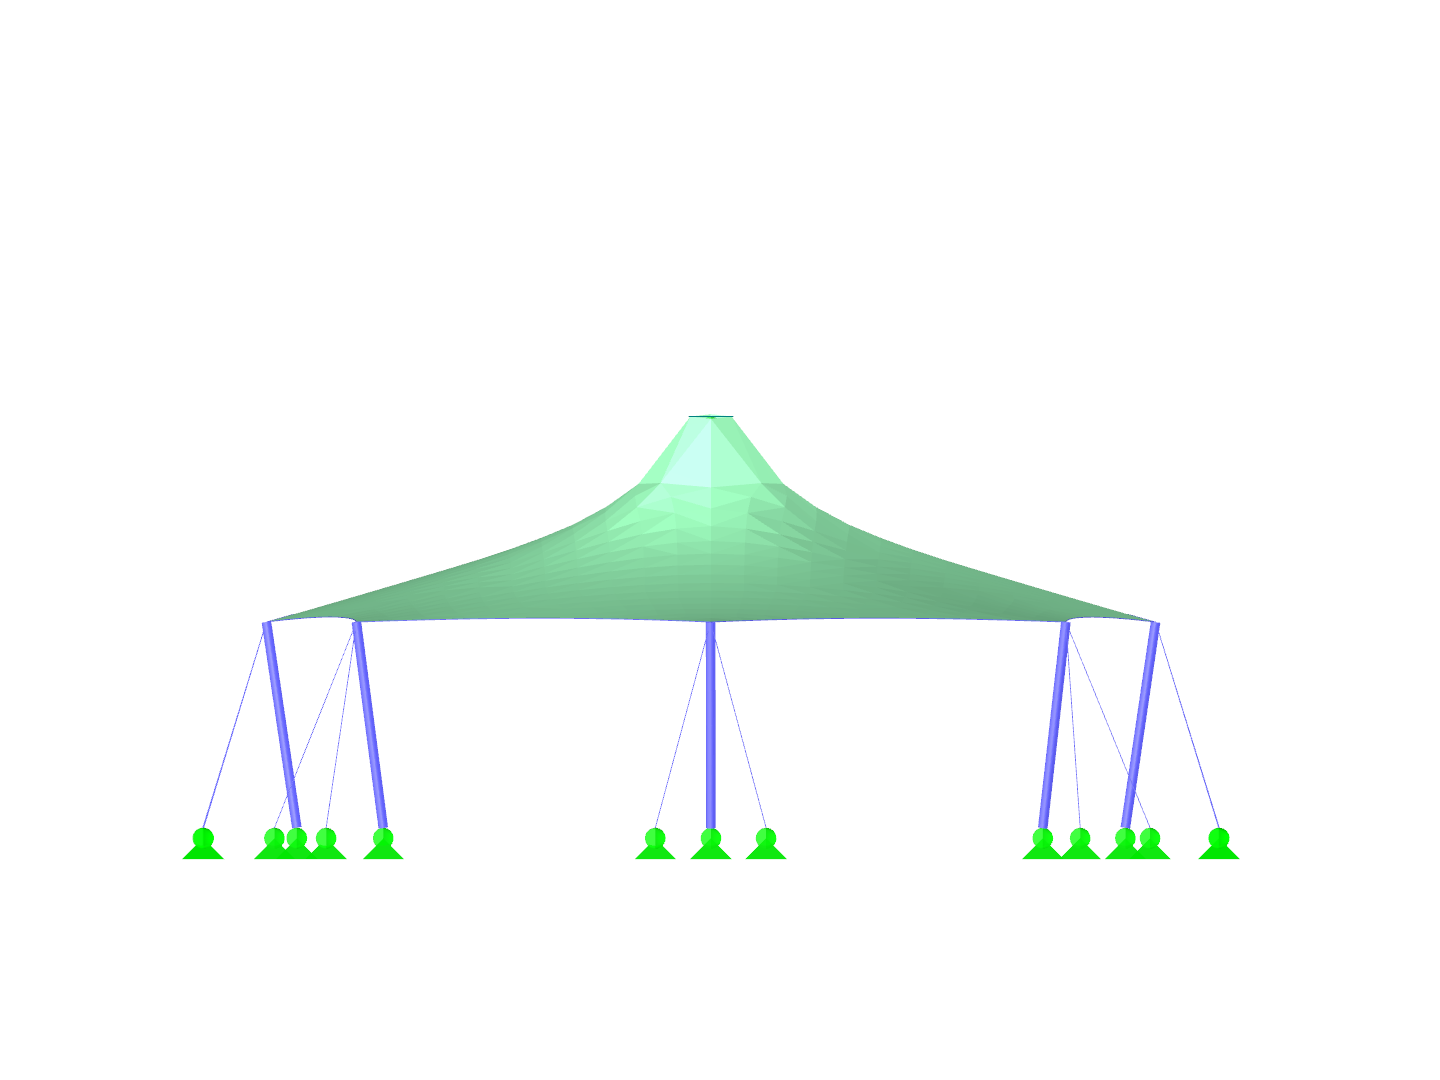 Stanová střecha se dvěma kuželovými vrcholy, pohled ve směru osy X